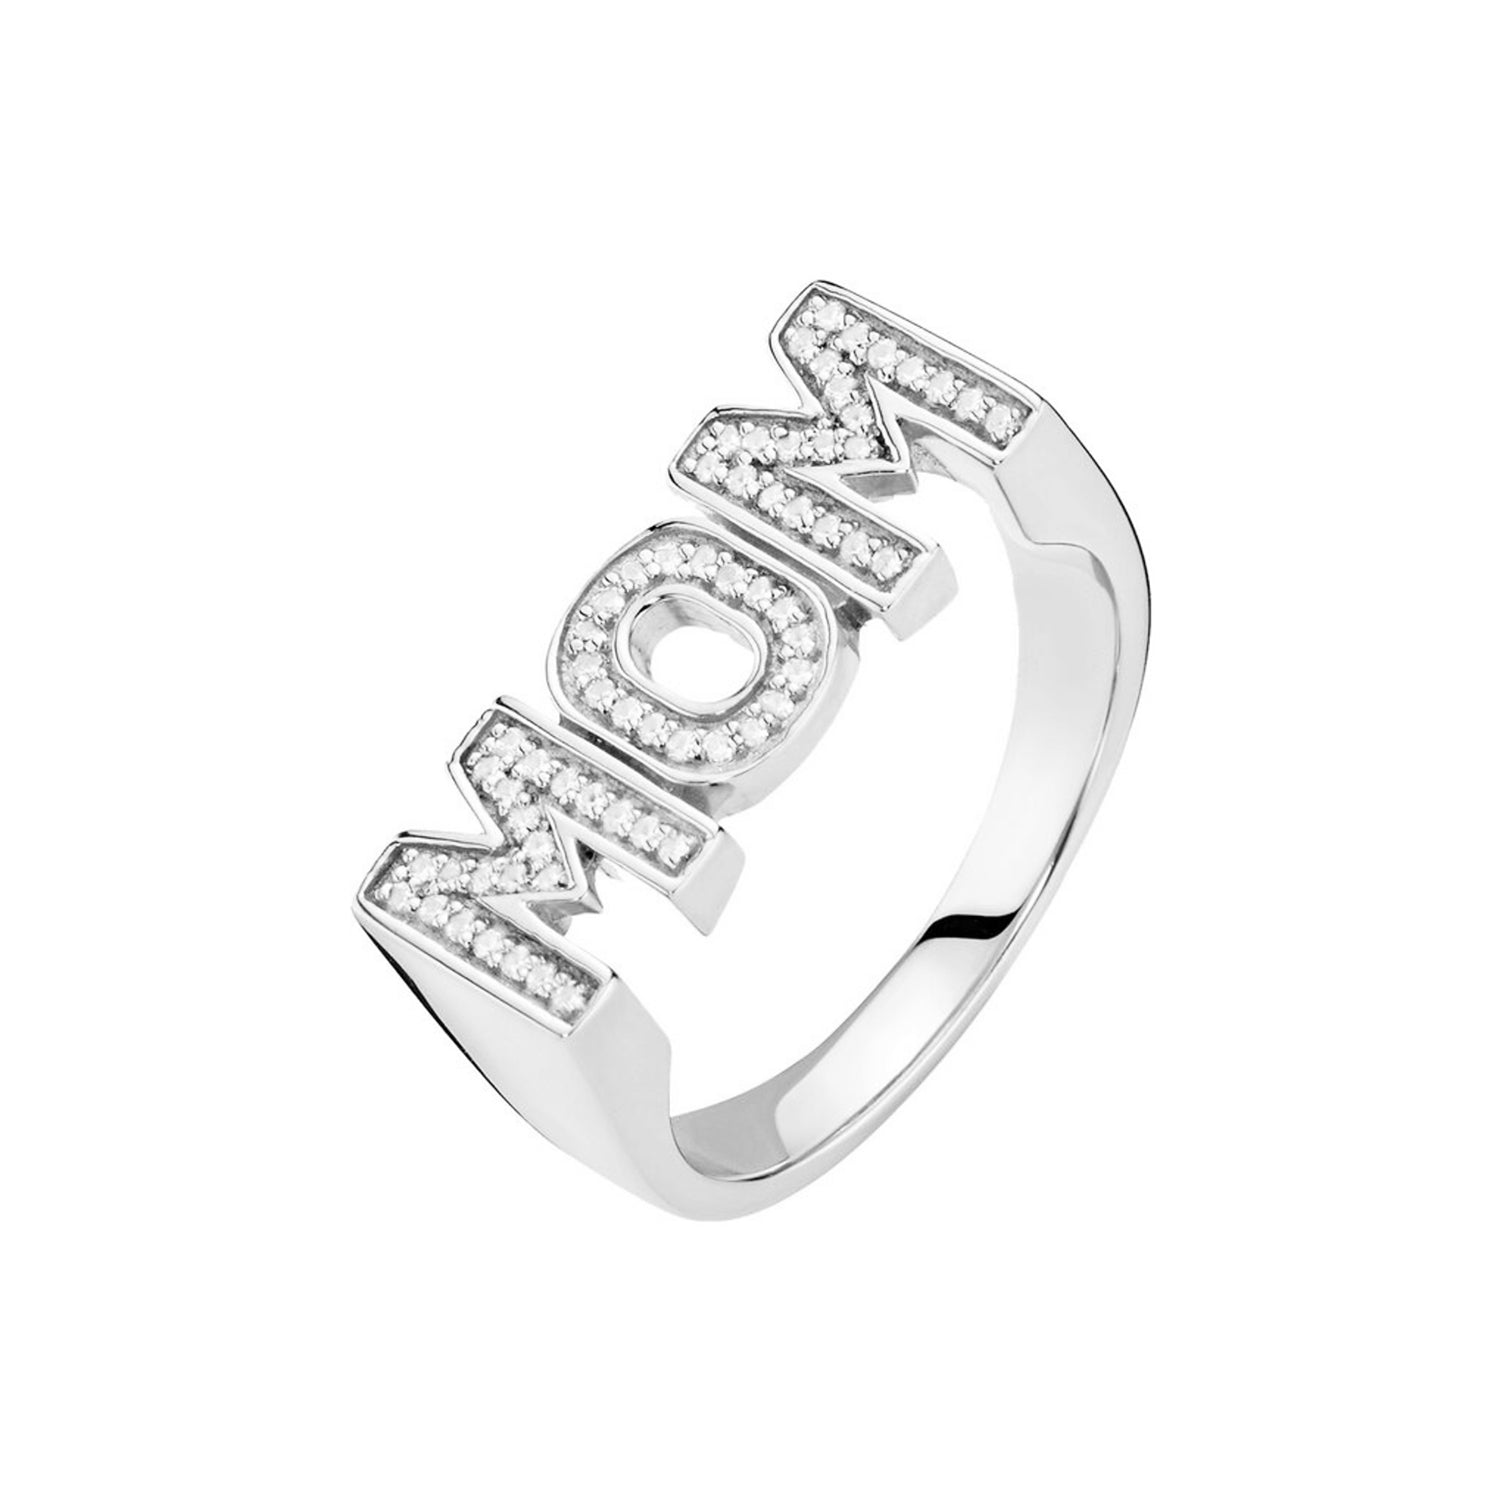 Se Maria Black - MOM ring Limited Edition, klar sølv sterlingsølv hos Vibholm.dk